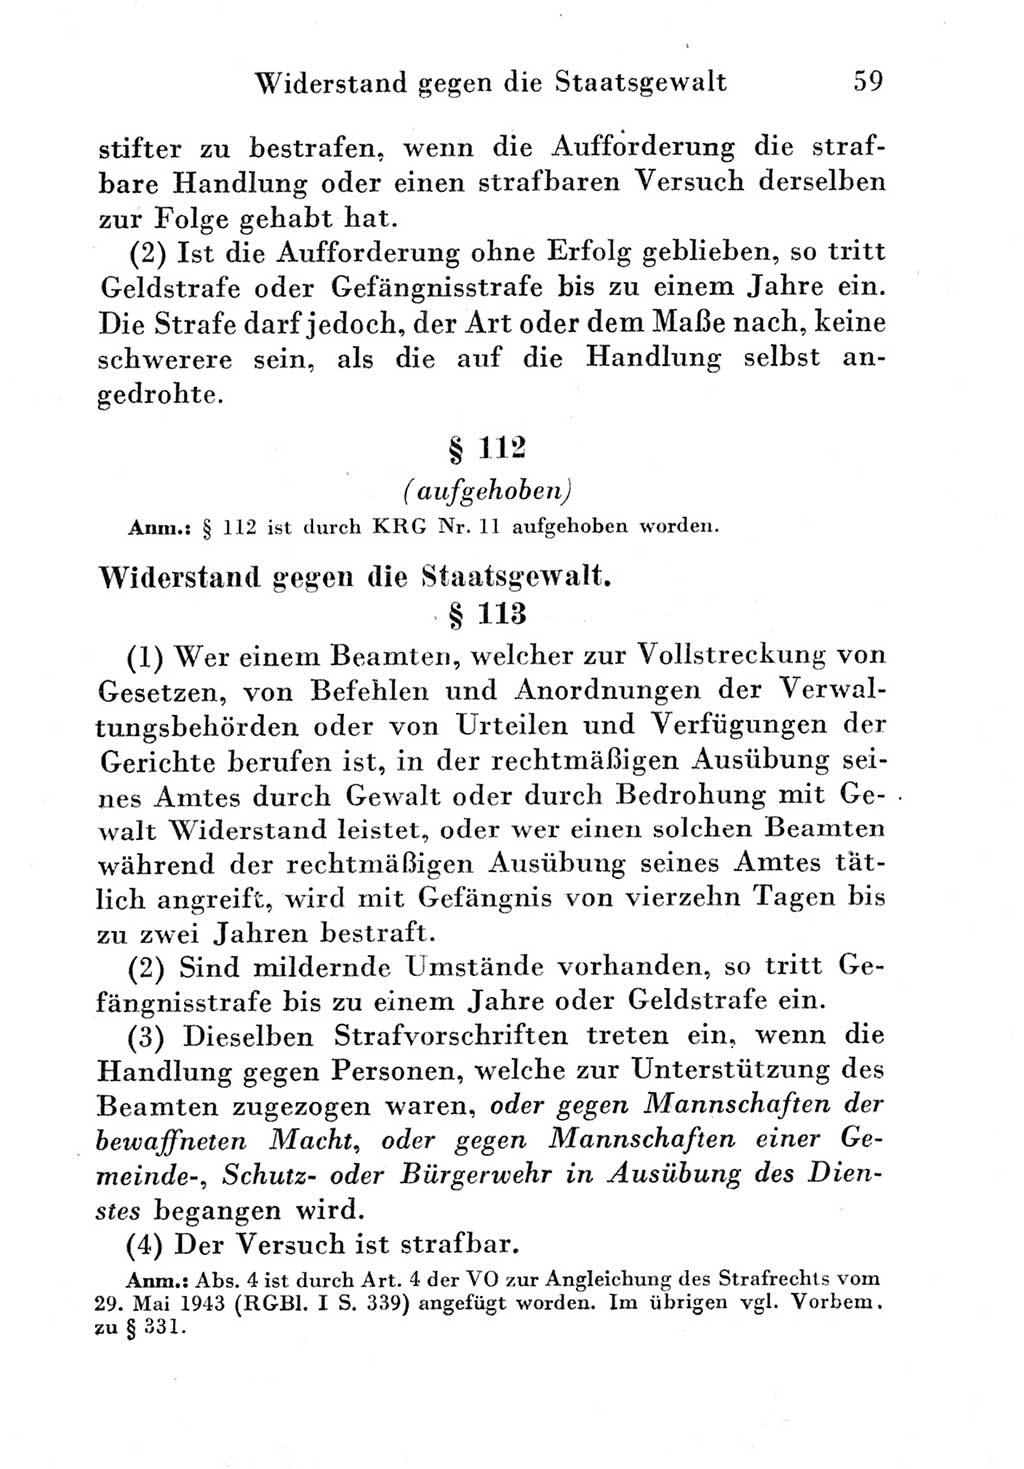 Strafgesetzbuch (StGB) und andere Strafgesetze [Deutsche Demokratische Republik (DDR)] 1951, Seite 59 (StGB Strafges. DDR 1951, S. 59)